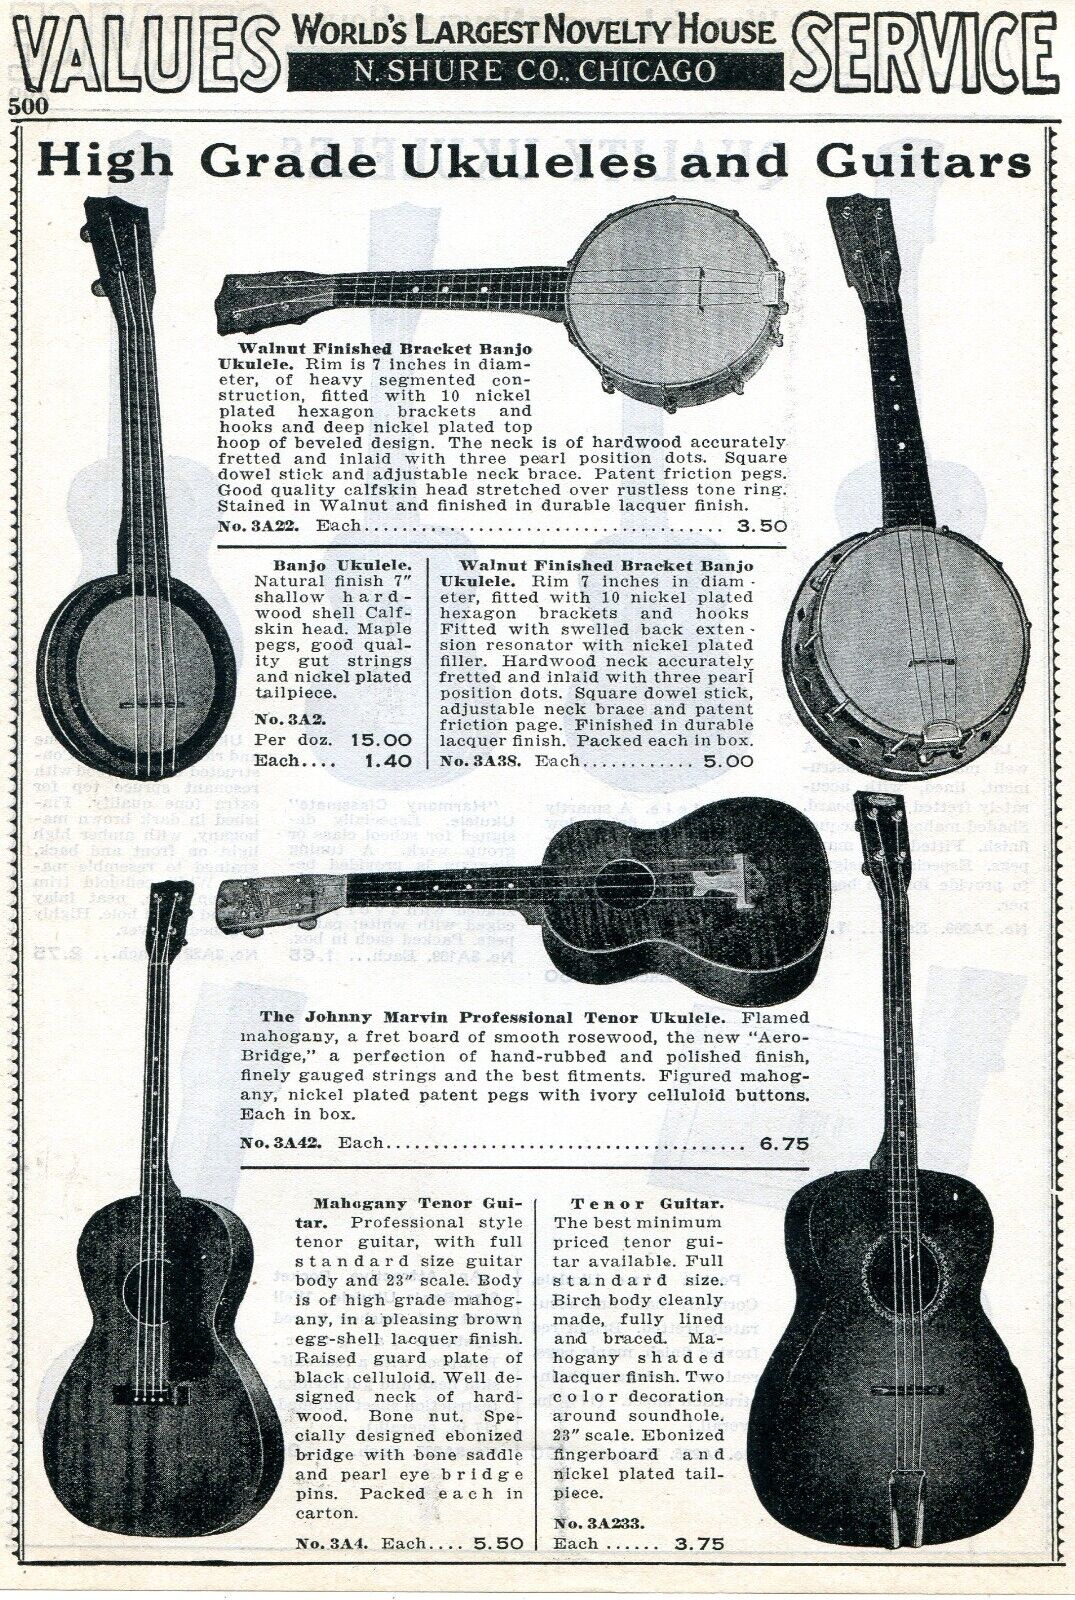 1938 Print Ad of Ukuleles & Banjos Harmony Classmate, Johnny Marvin